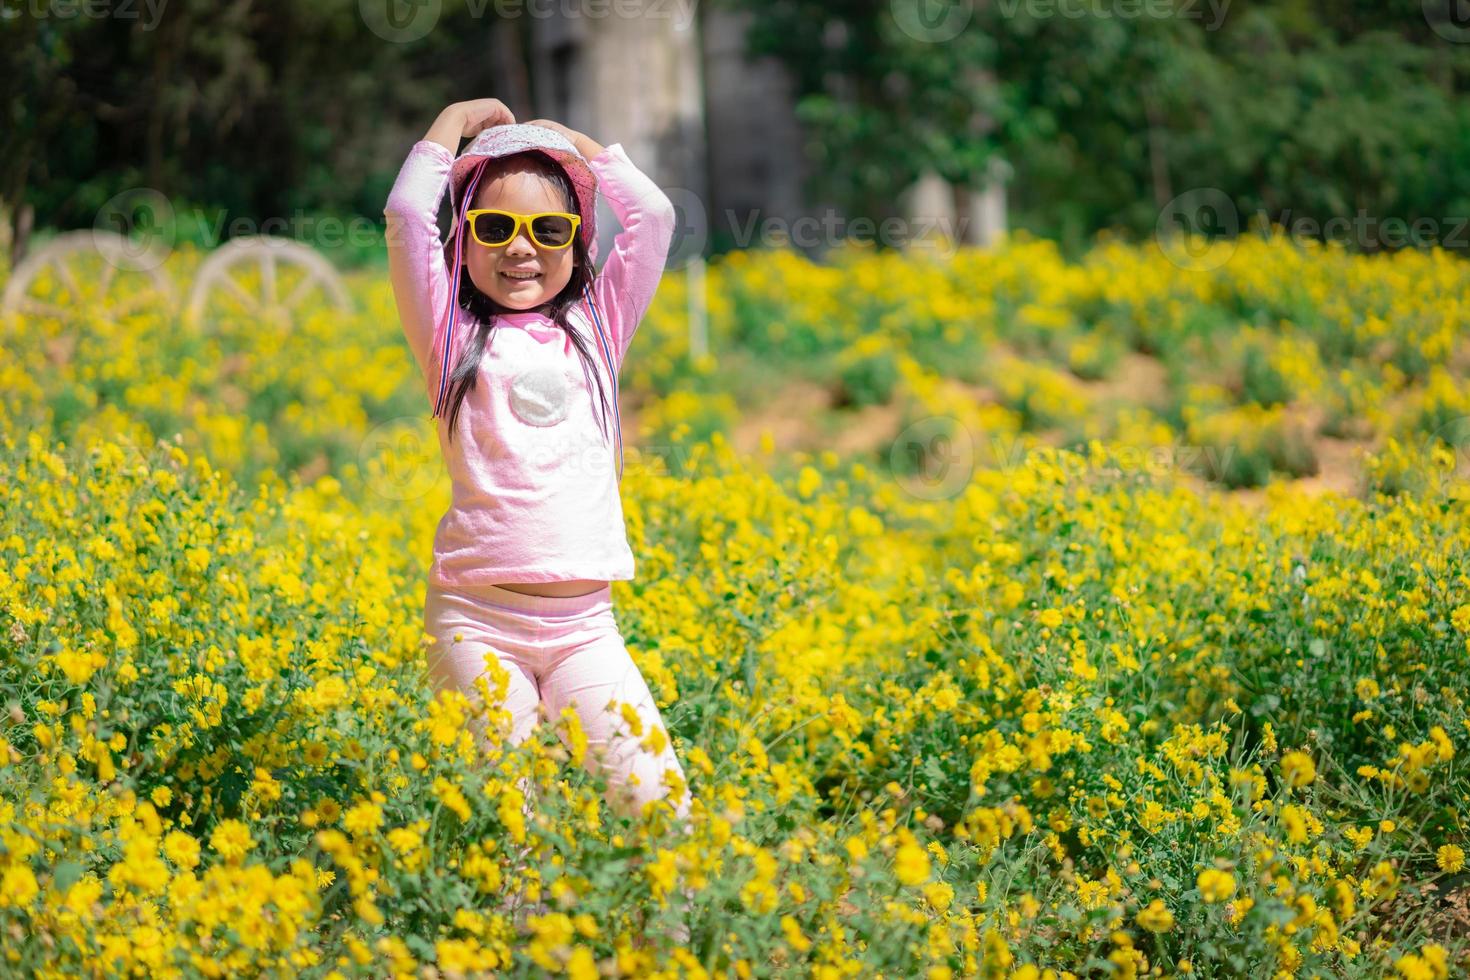 petite fille asiatique en robe rose porter un chapeau et des lunettes de soleil debout dans un jardin de fleurs jaunes photo